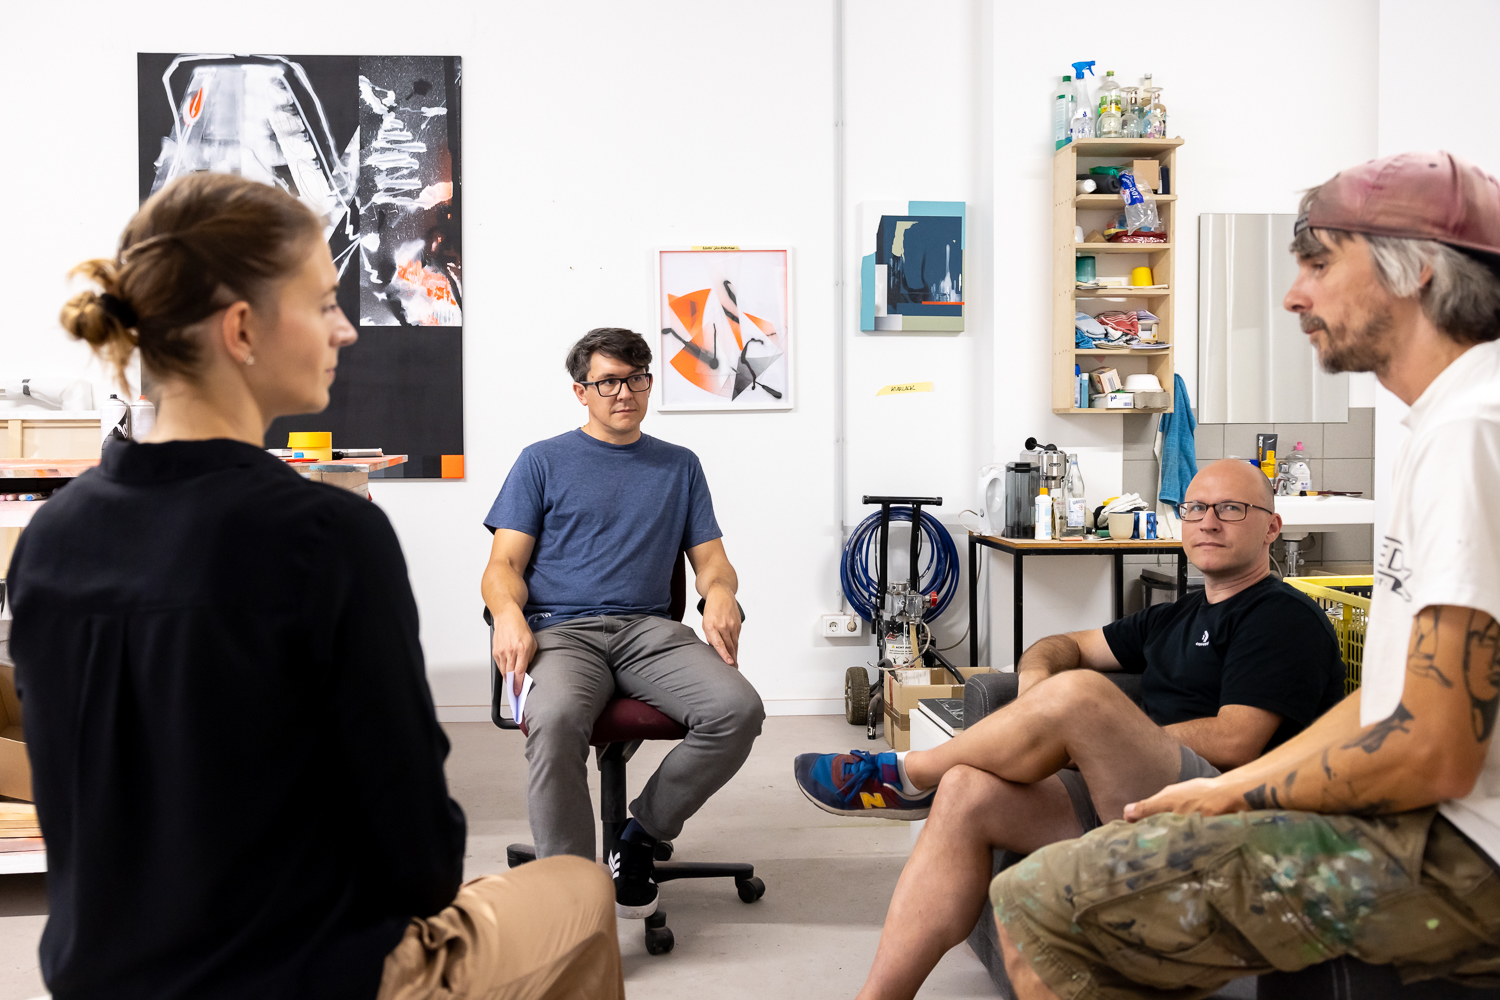 Wir sehen die Graffitikünstler Kai „Semor“ Niederhausen und Alexander Gnida sowie Yvonne Hanke und Willi Koenen von go.Rheinland im Atelier sitzen und reden.